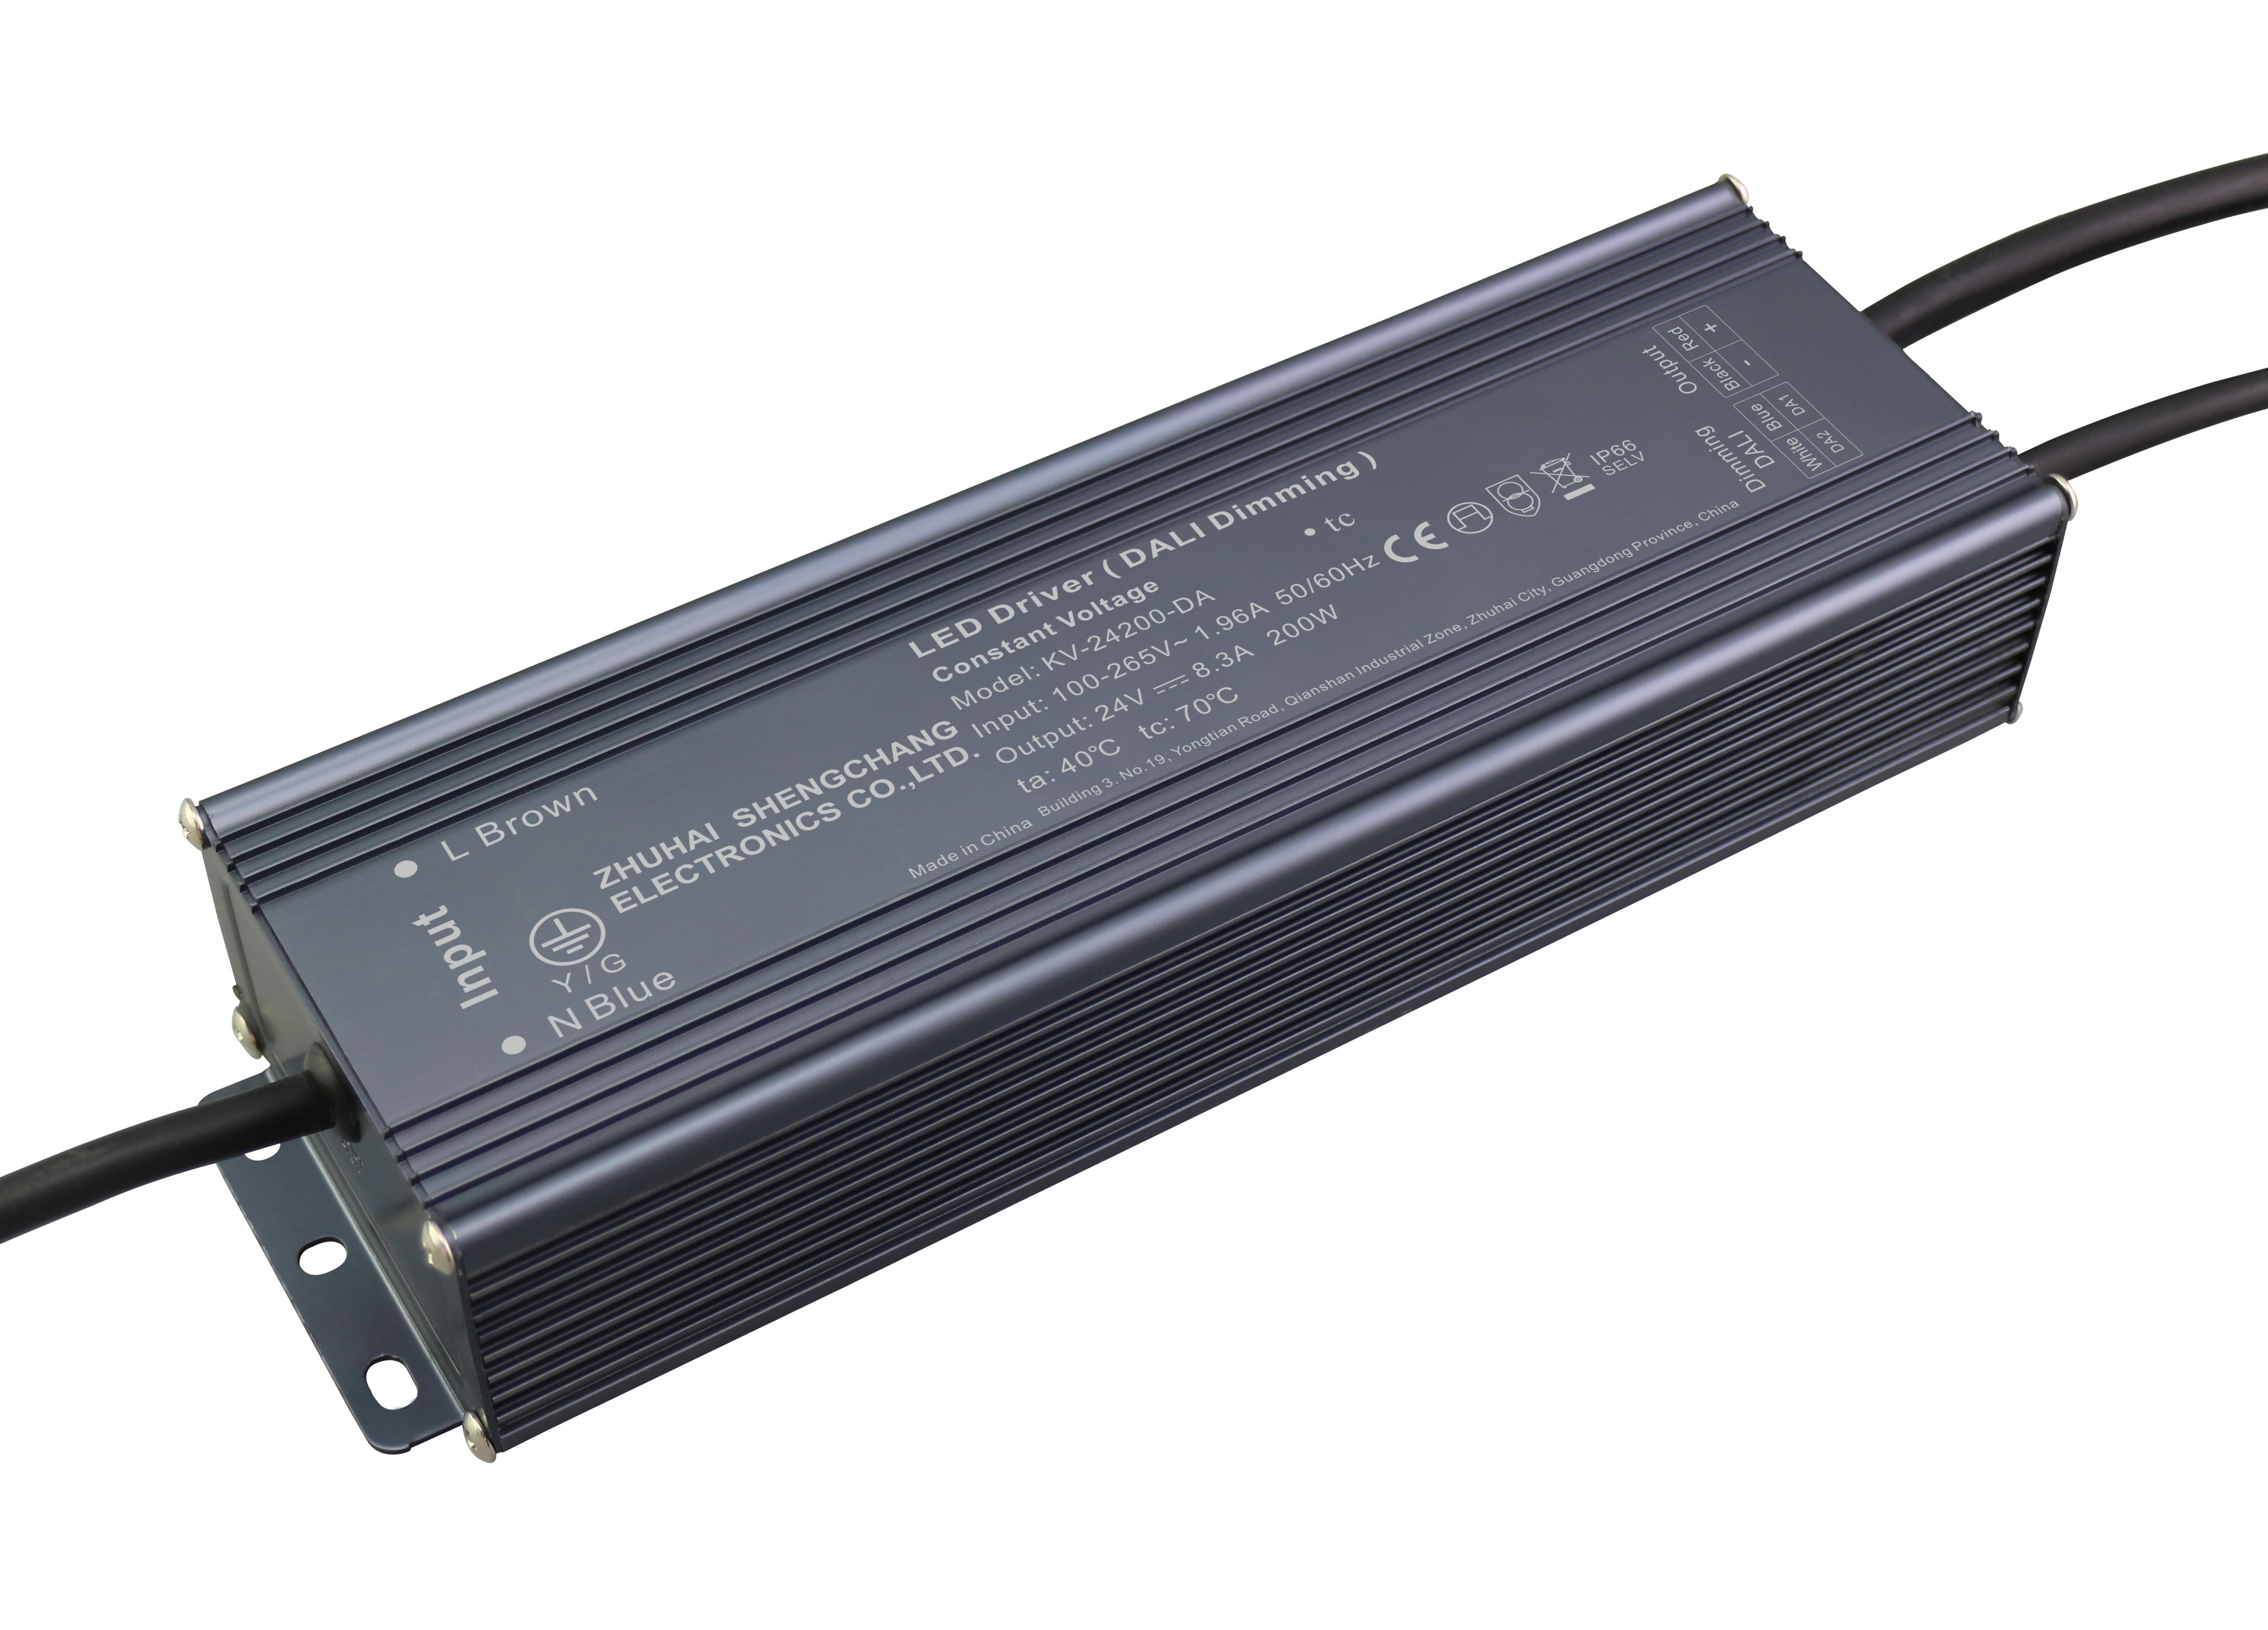 KV-DA Series 200W DALI constant voltage dimmable LED driver